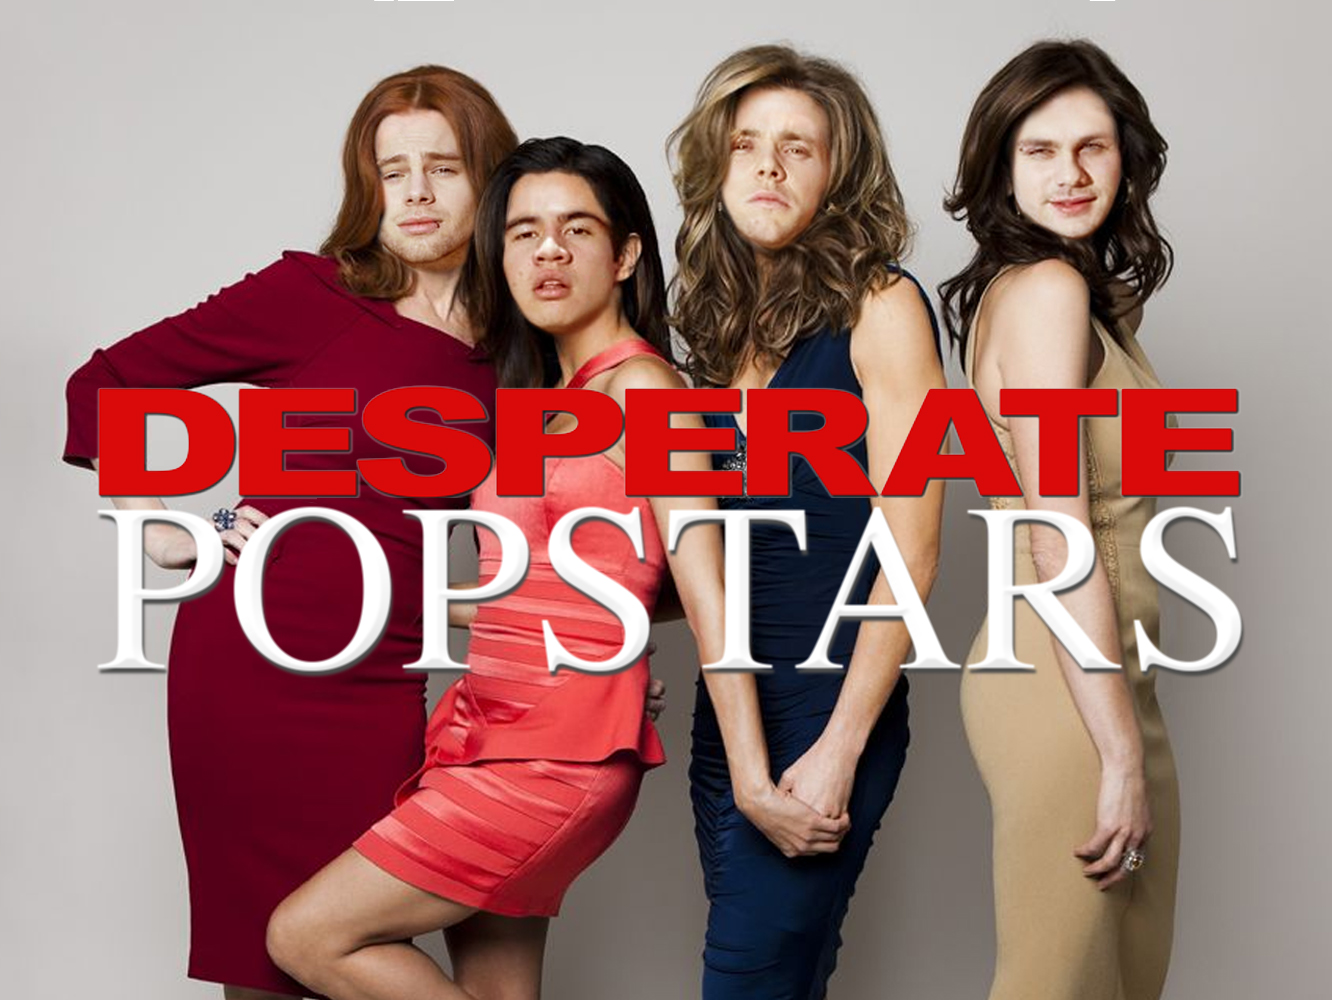  ‘Desperate Popstars’ : 5 Seconds Of Summer alegan haber perdido el #1 de Billboard por un error humano